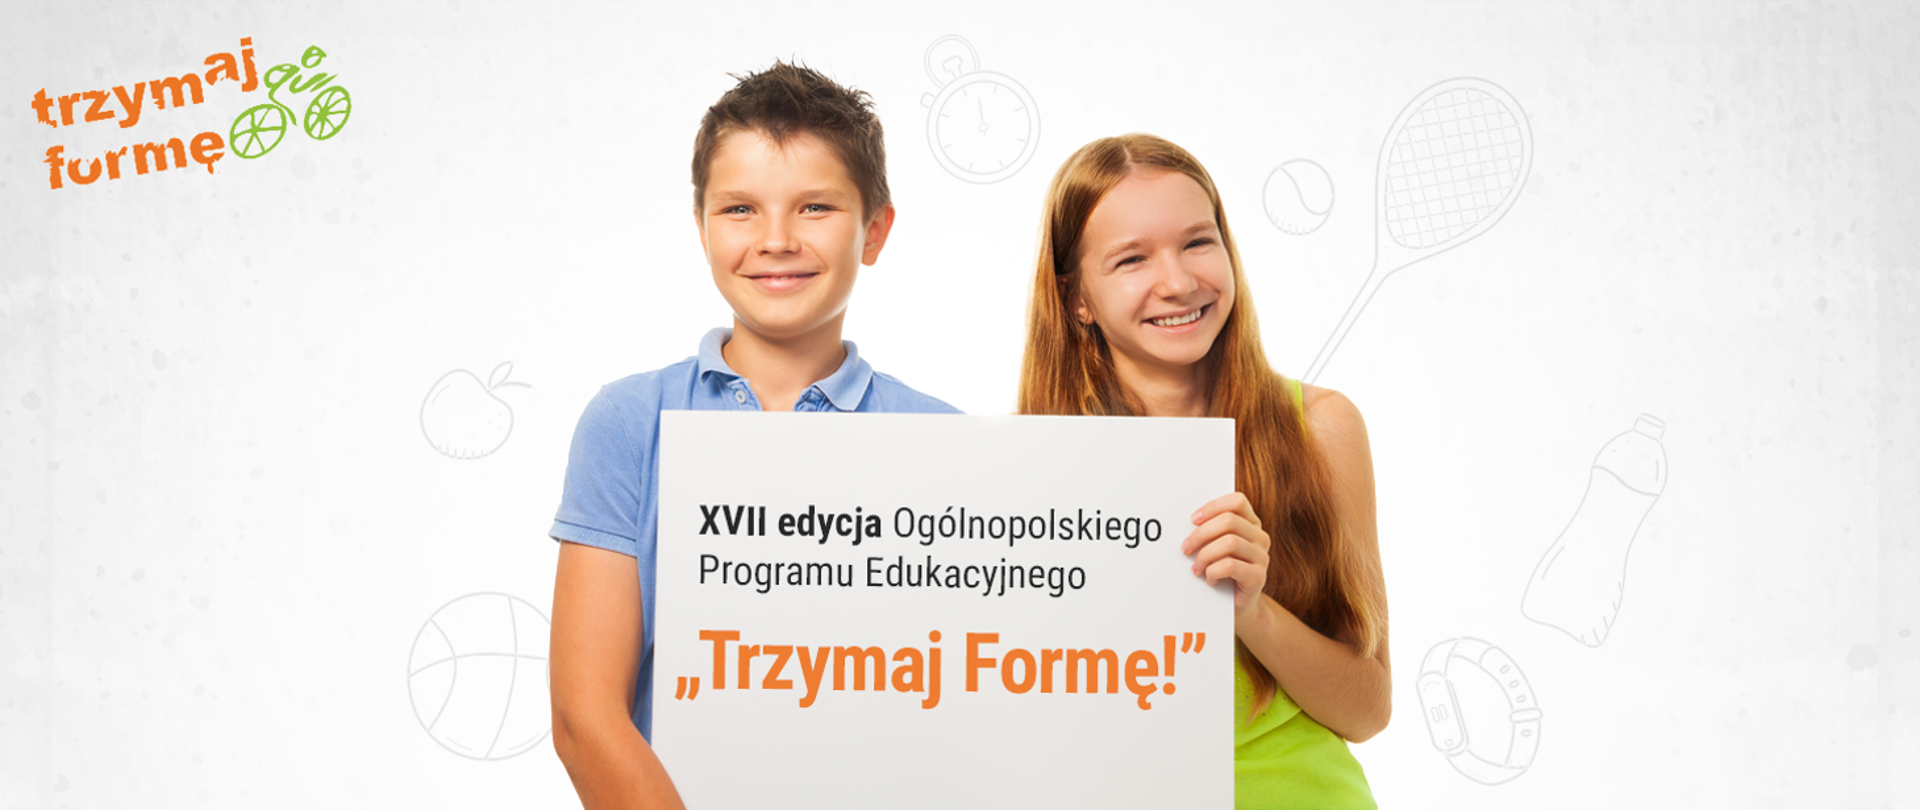 Dwoje dzieci trzymające napis XVII edycje Ogólnopolskiego Programu Edukacyjnego "Trzymaj Formę"